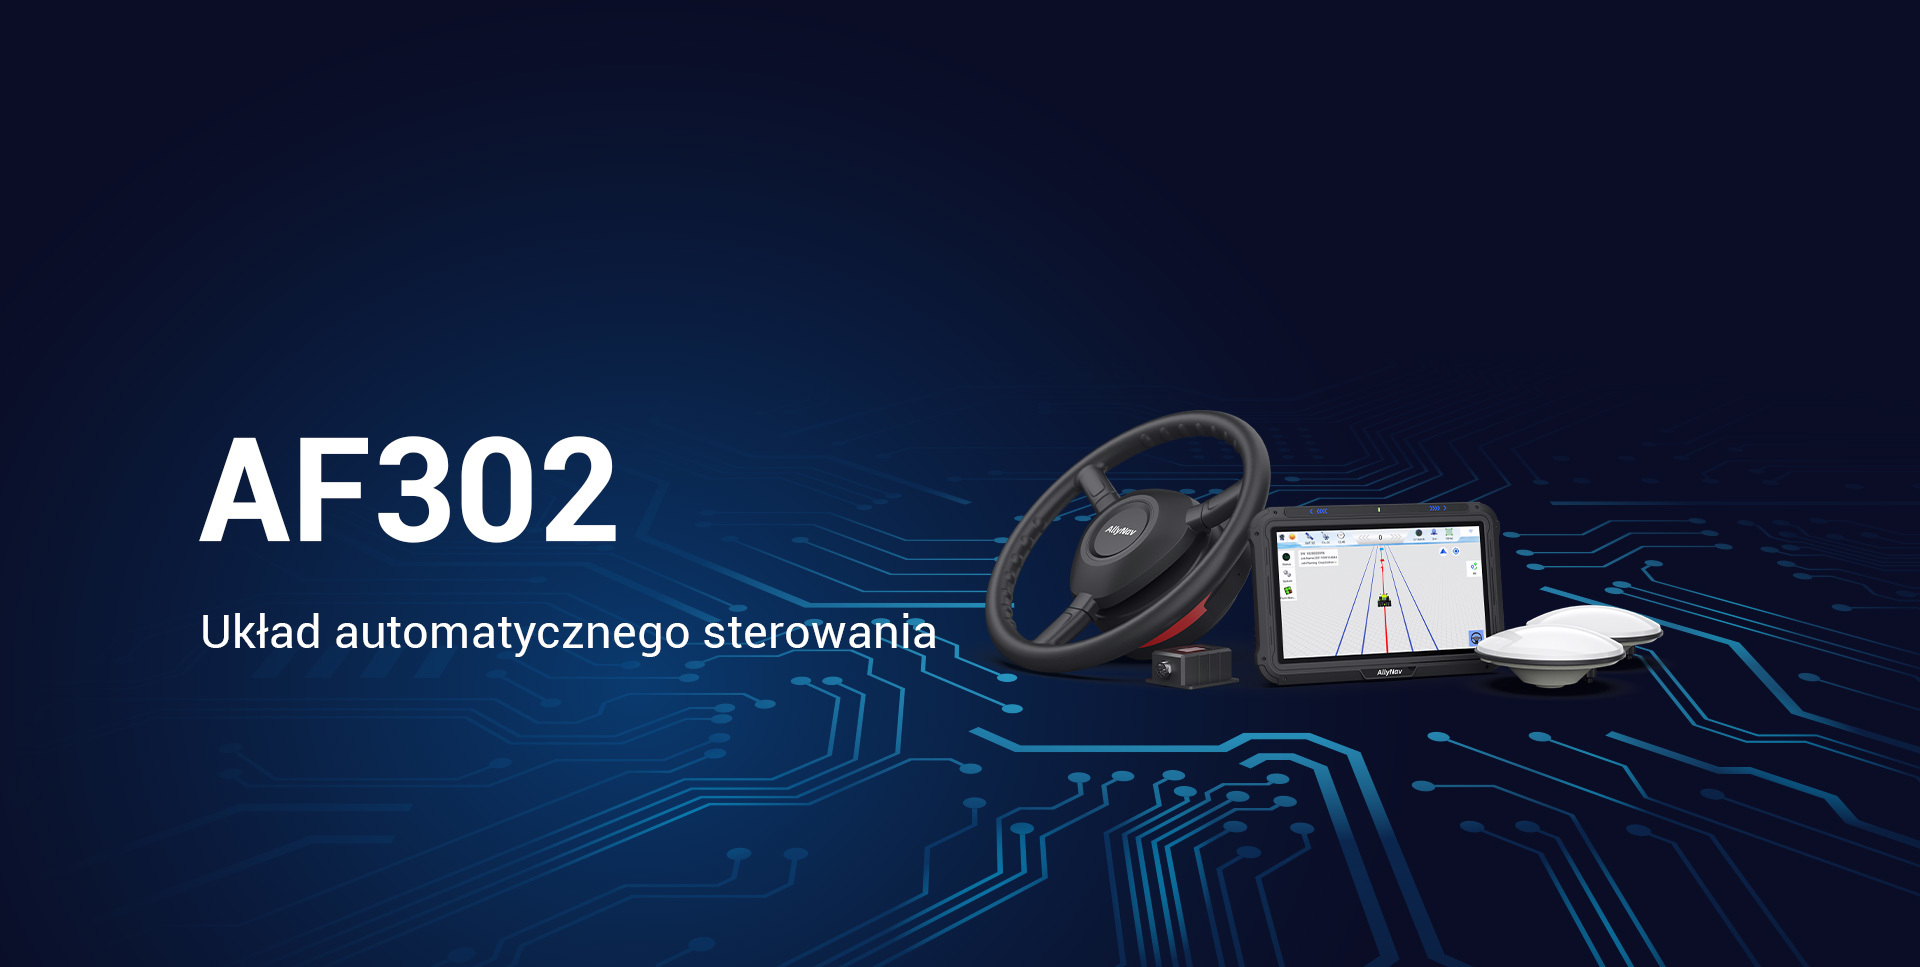 AF302 Auto-steering System